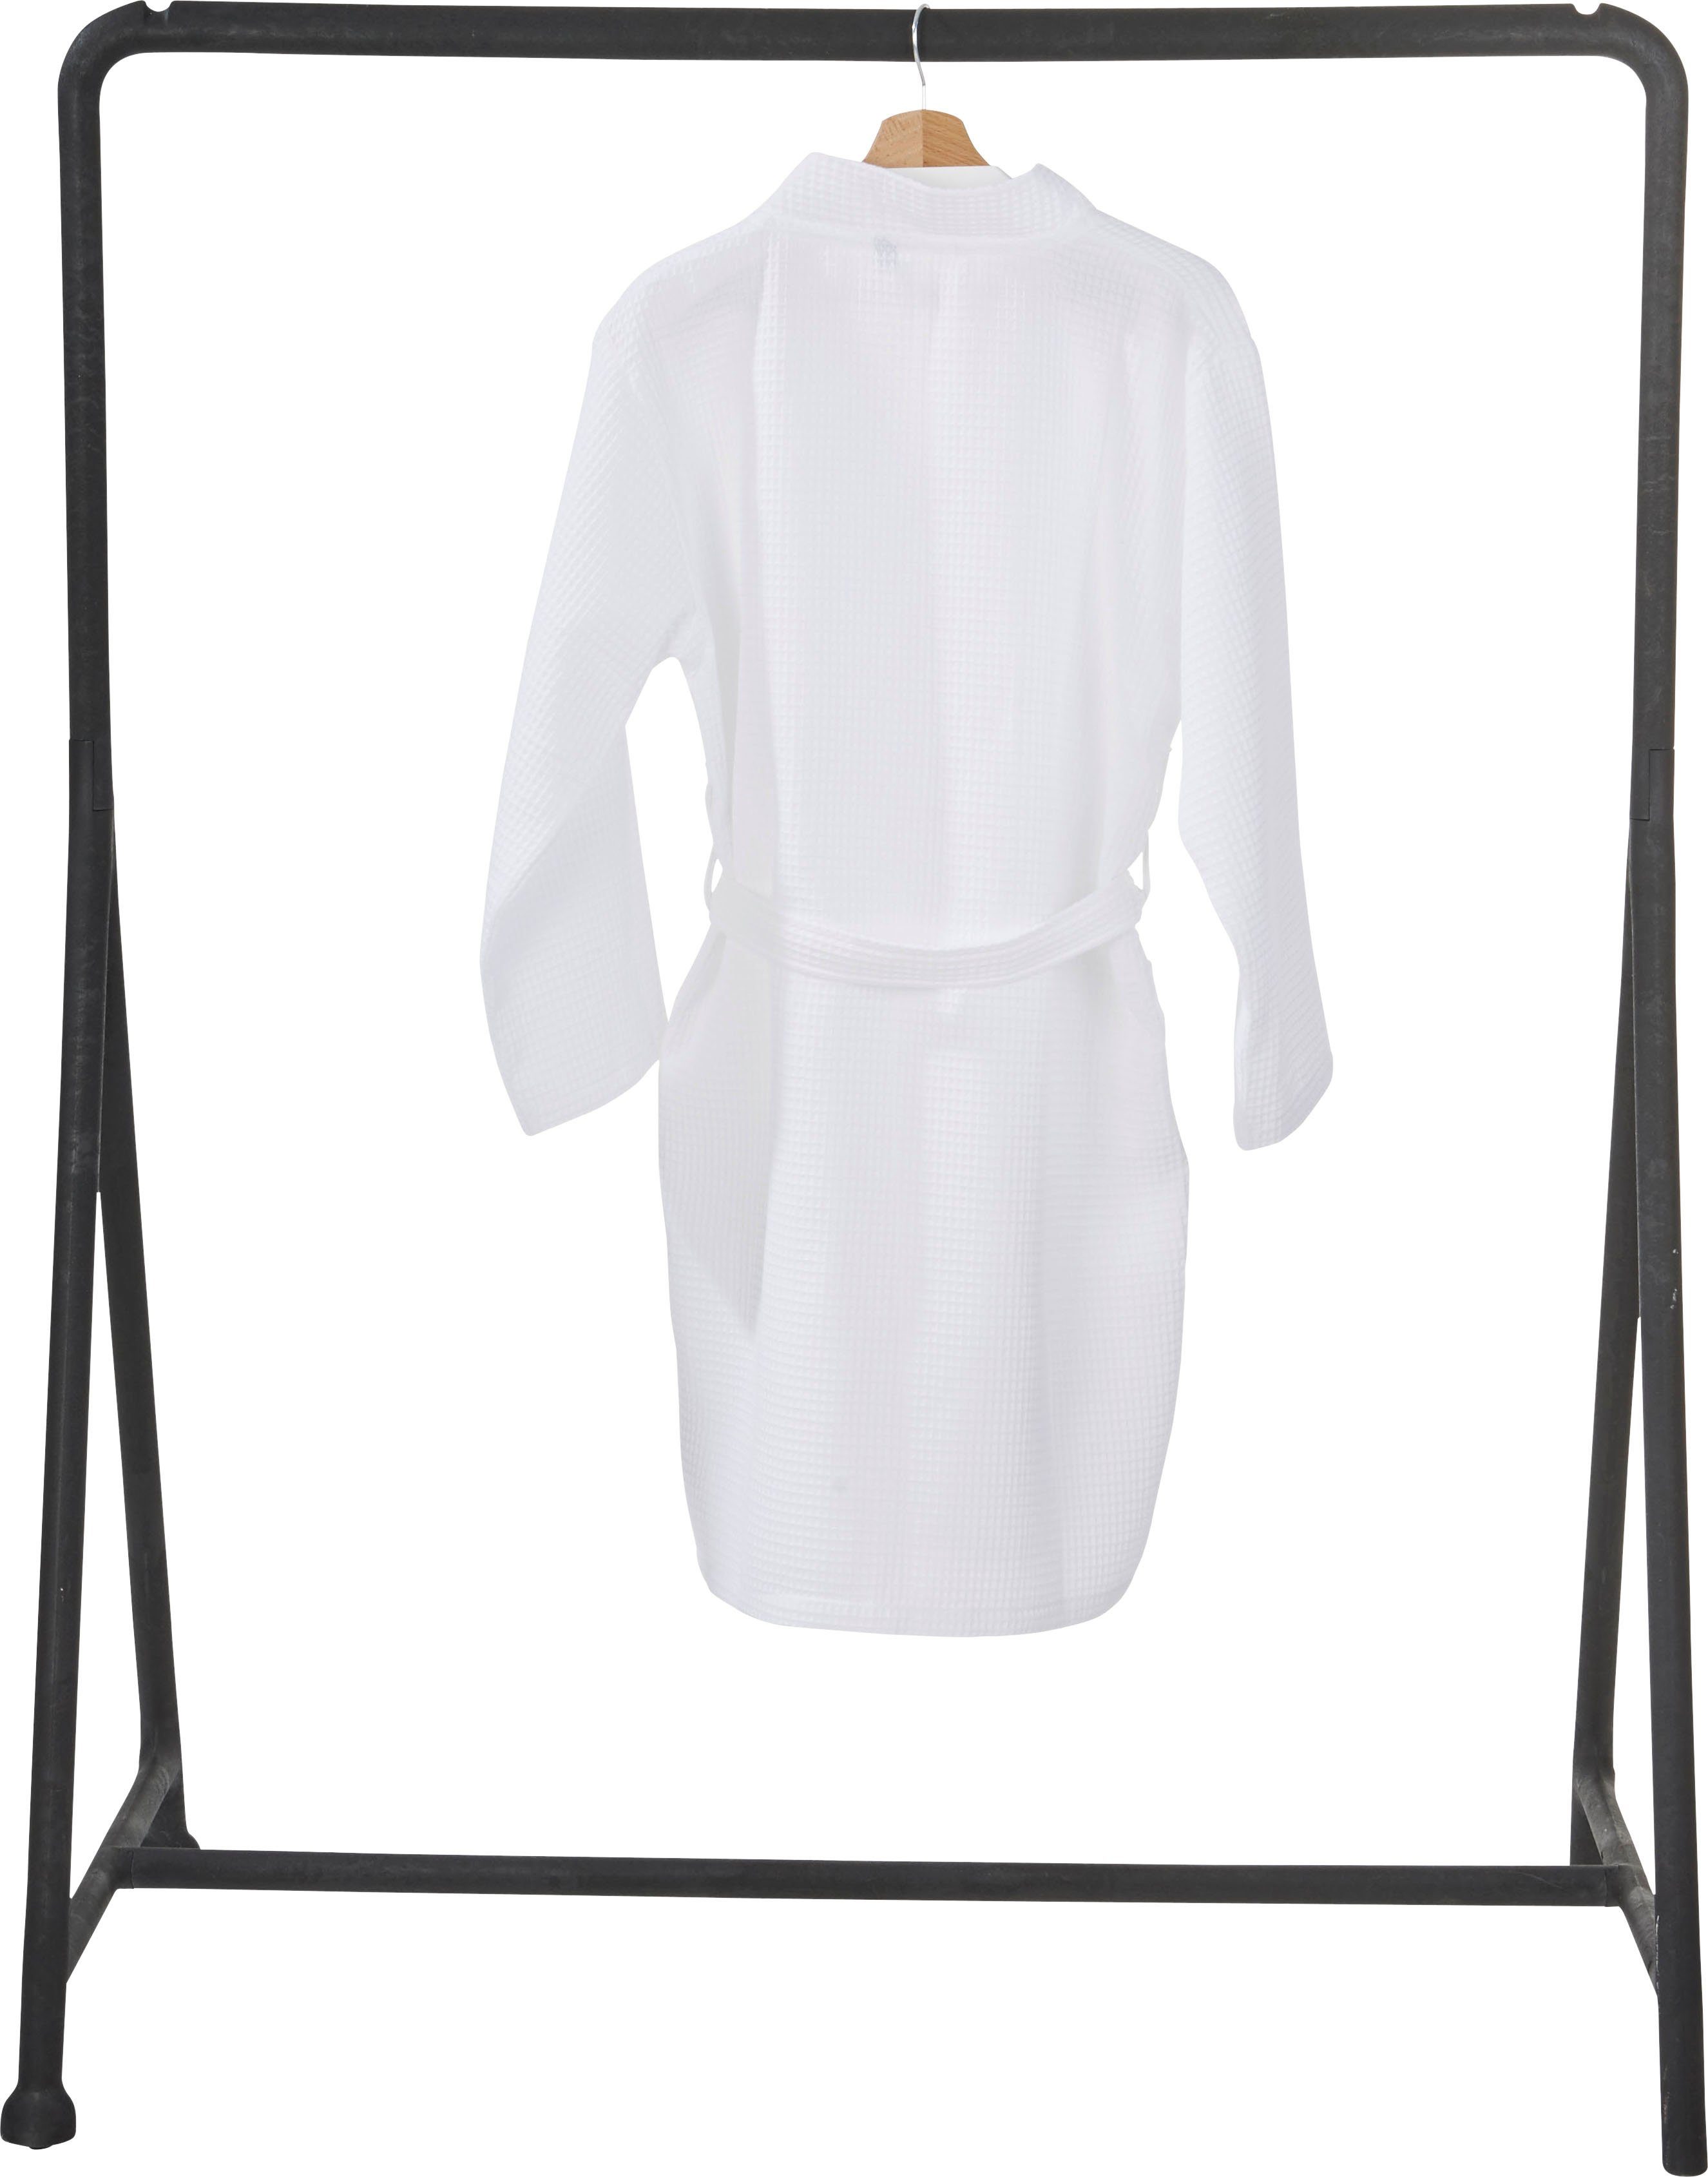 Schalkragen Taschen mit Damenbademantel done.® MySense, aufgesetzten Piqué, Kurzform, Waffelpiqué-Struktur, weiß und